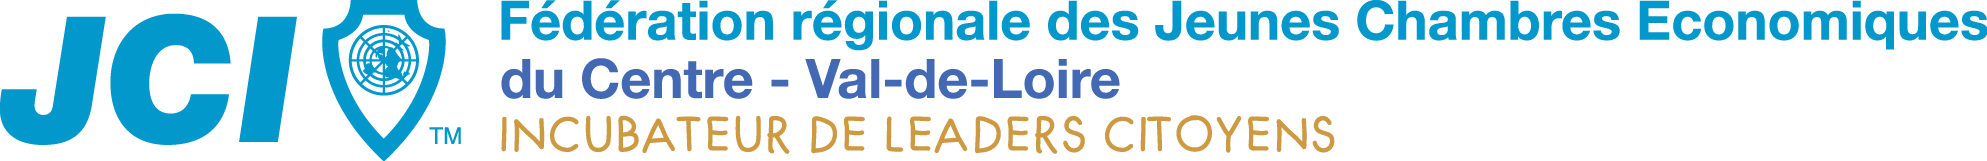 Fédération régionale des Jeunes Chambres Economiques du Centre-Val de Loire